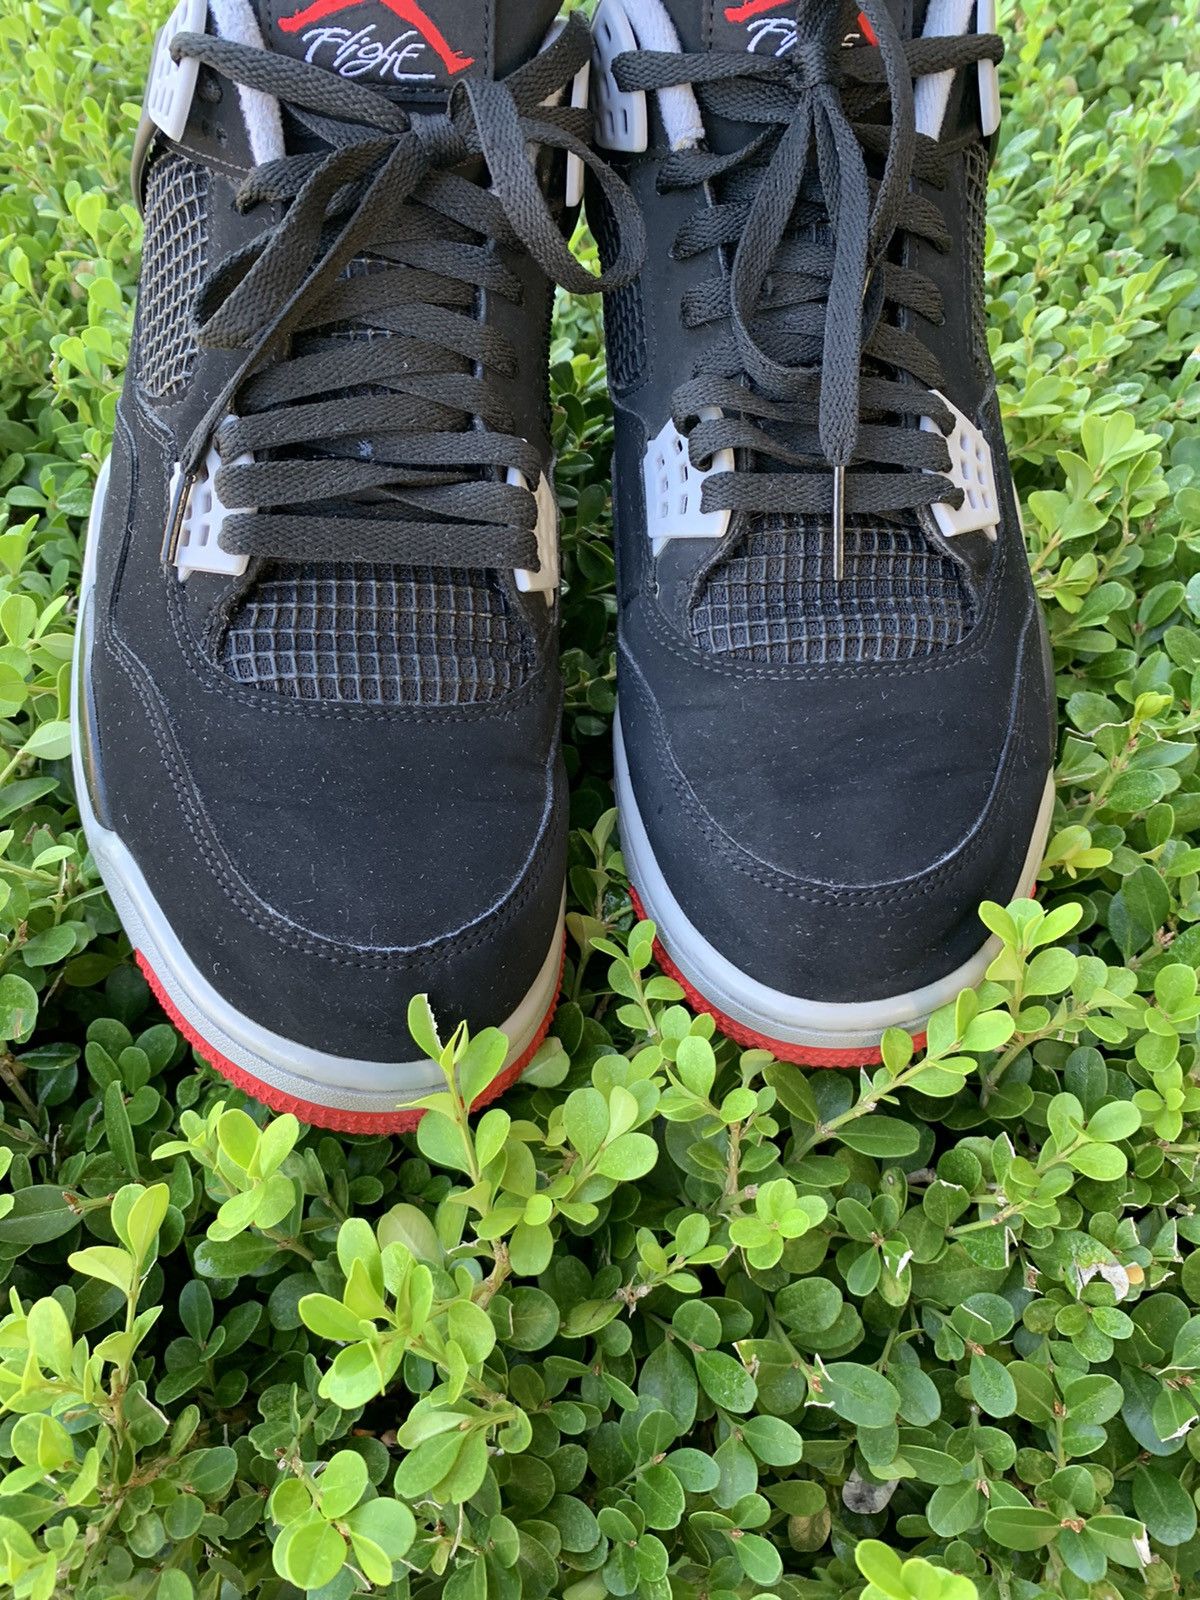 Nike Air Jordan 4 Retro OG 2019 Bred 2019 Size US 13 / EU 46 - 2 Preview